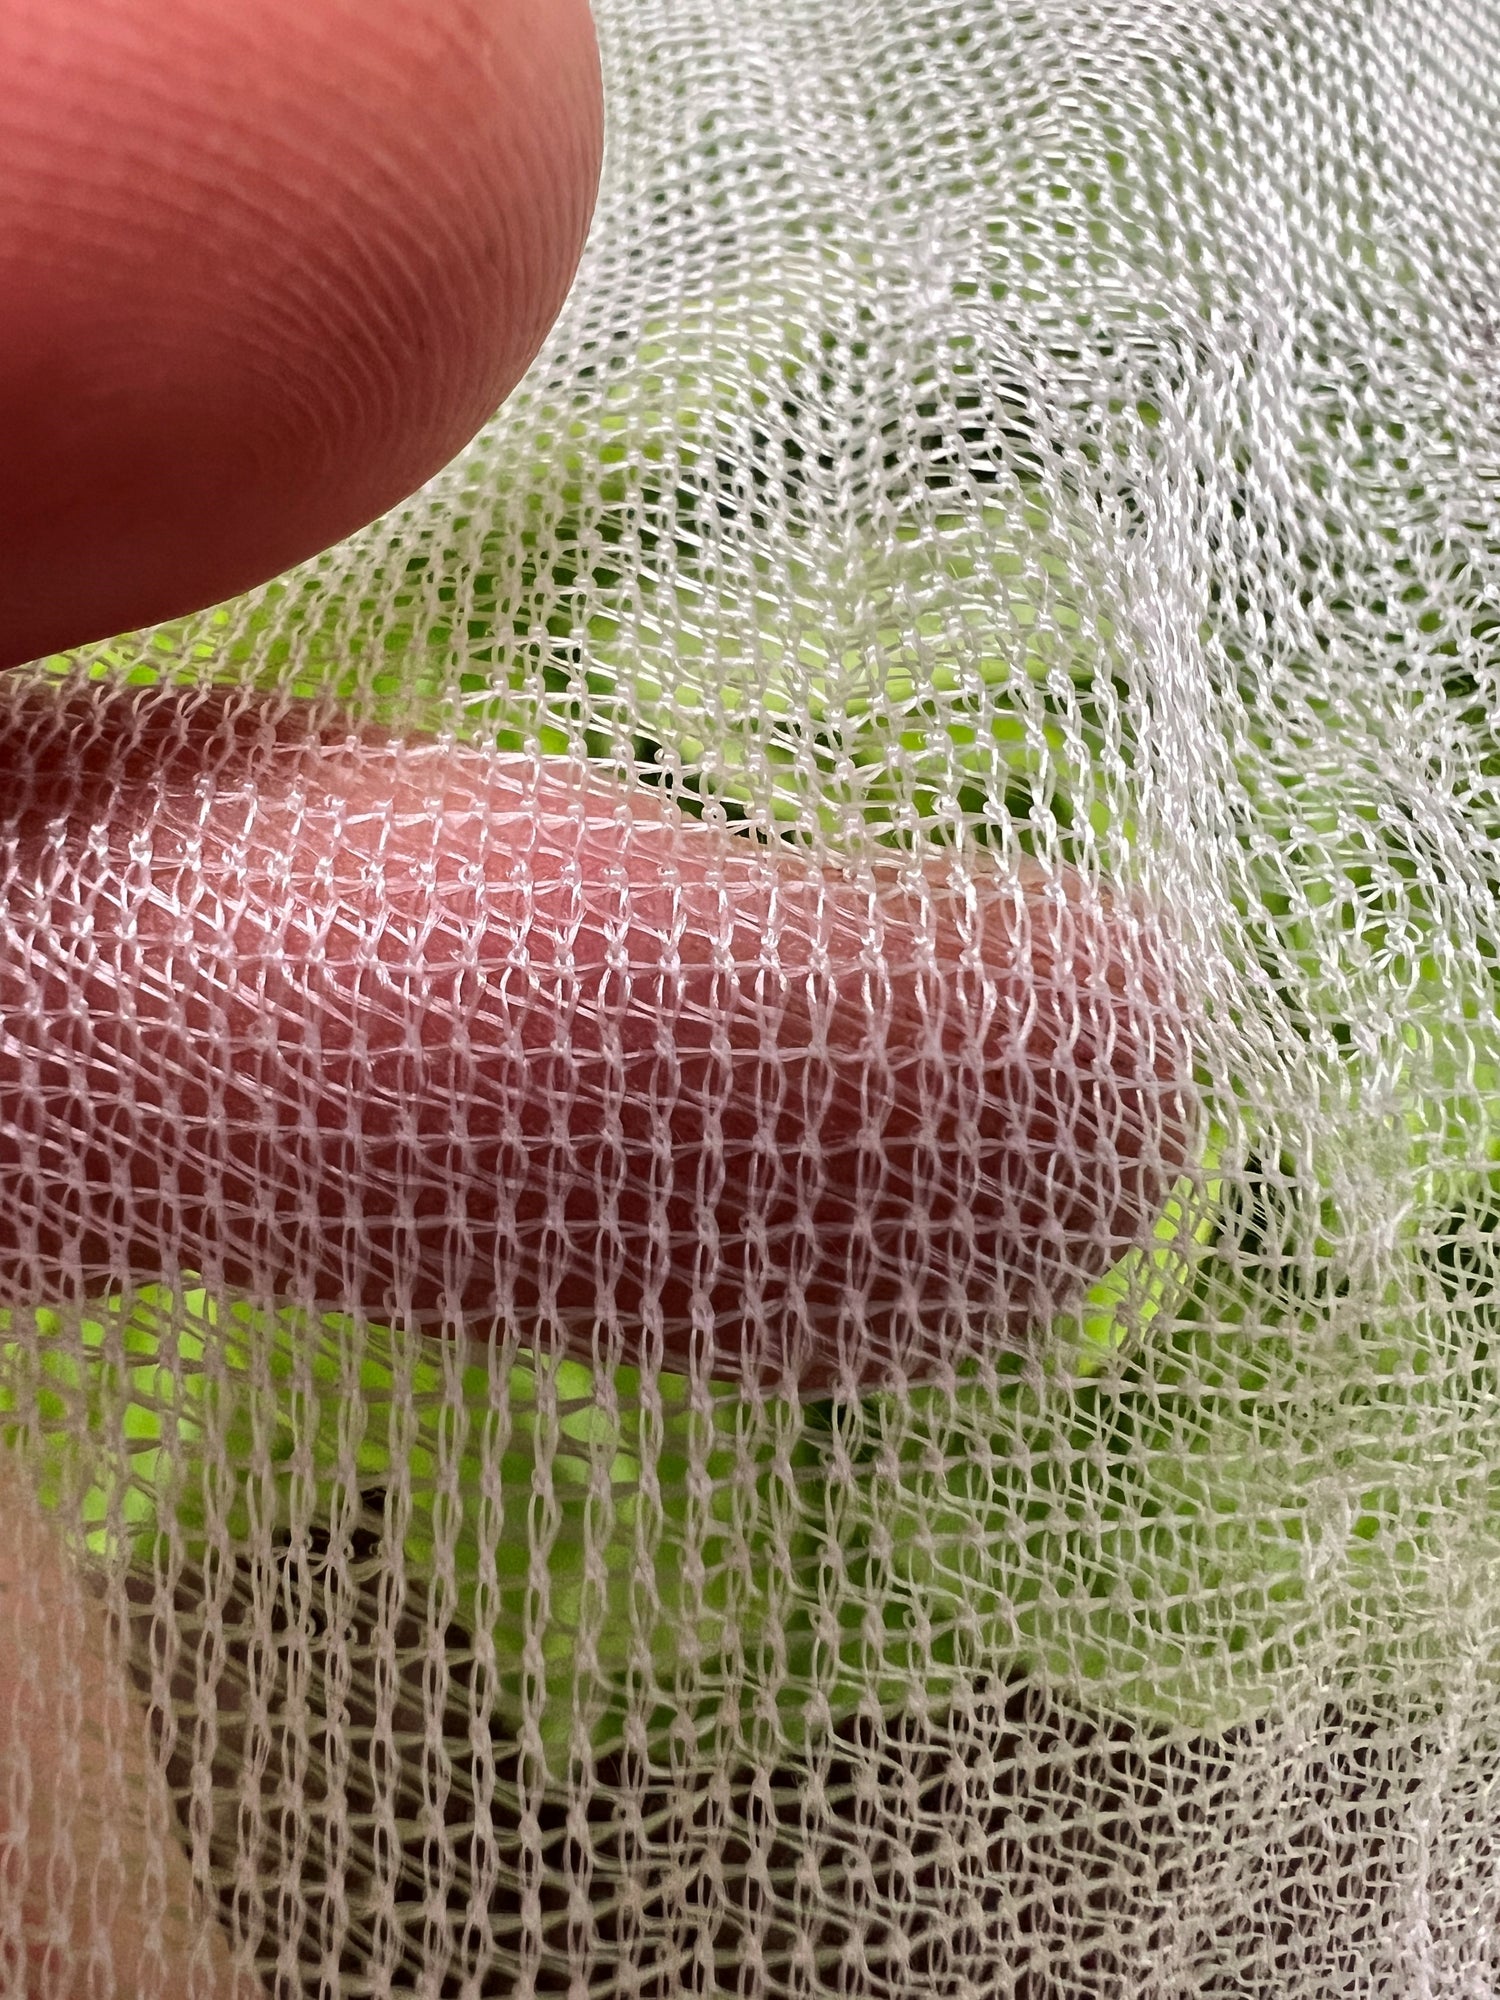 Which garden netting is best? (2023)